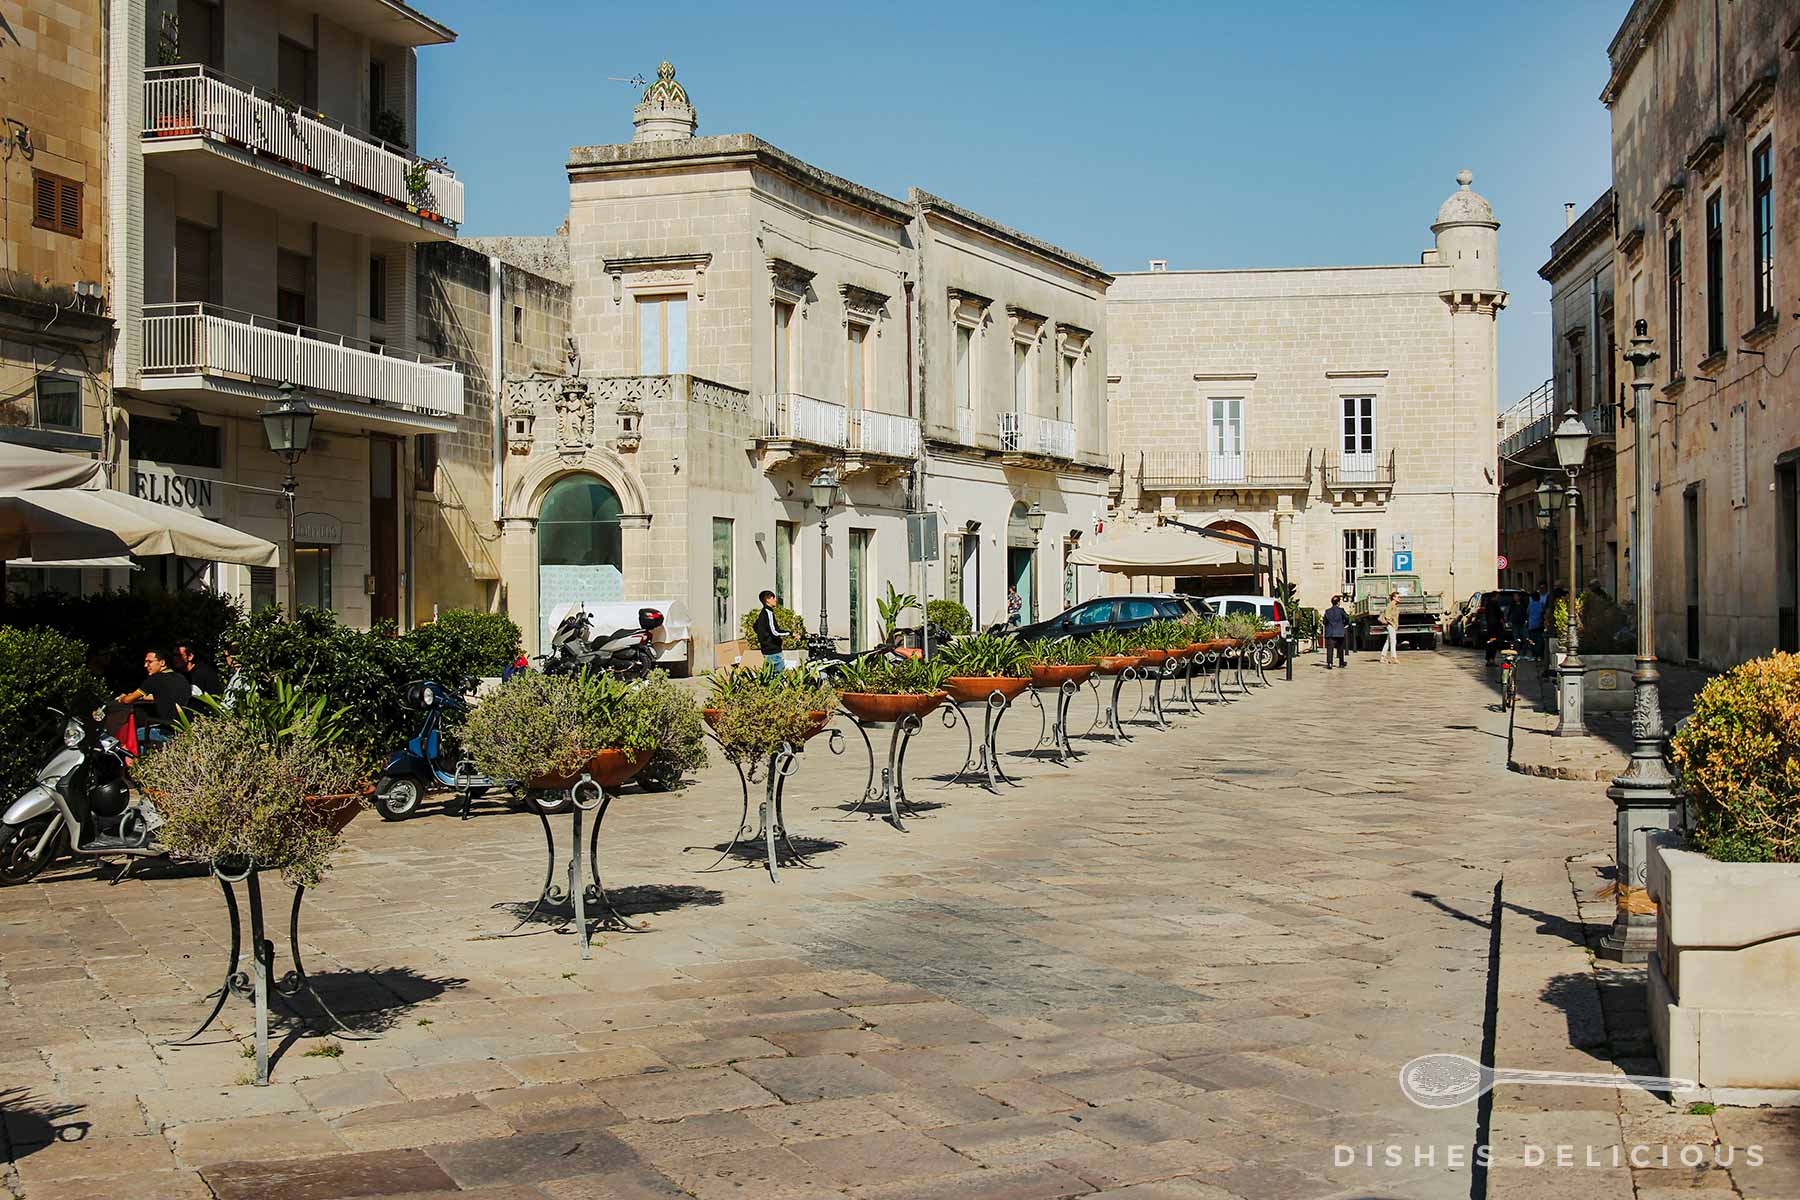 Piazza Aldo Moro mit einer langen Reihe Pflanzenkübel und alten Gebäuden.